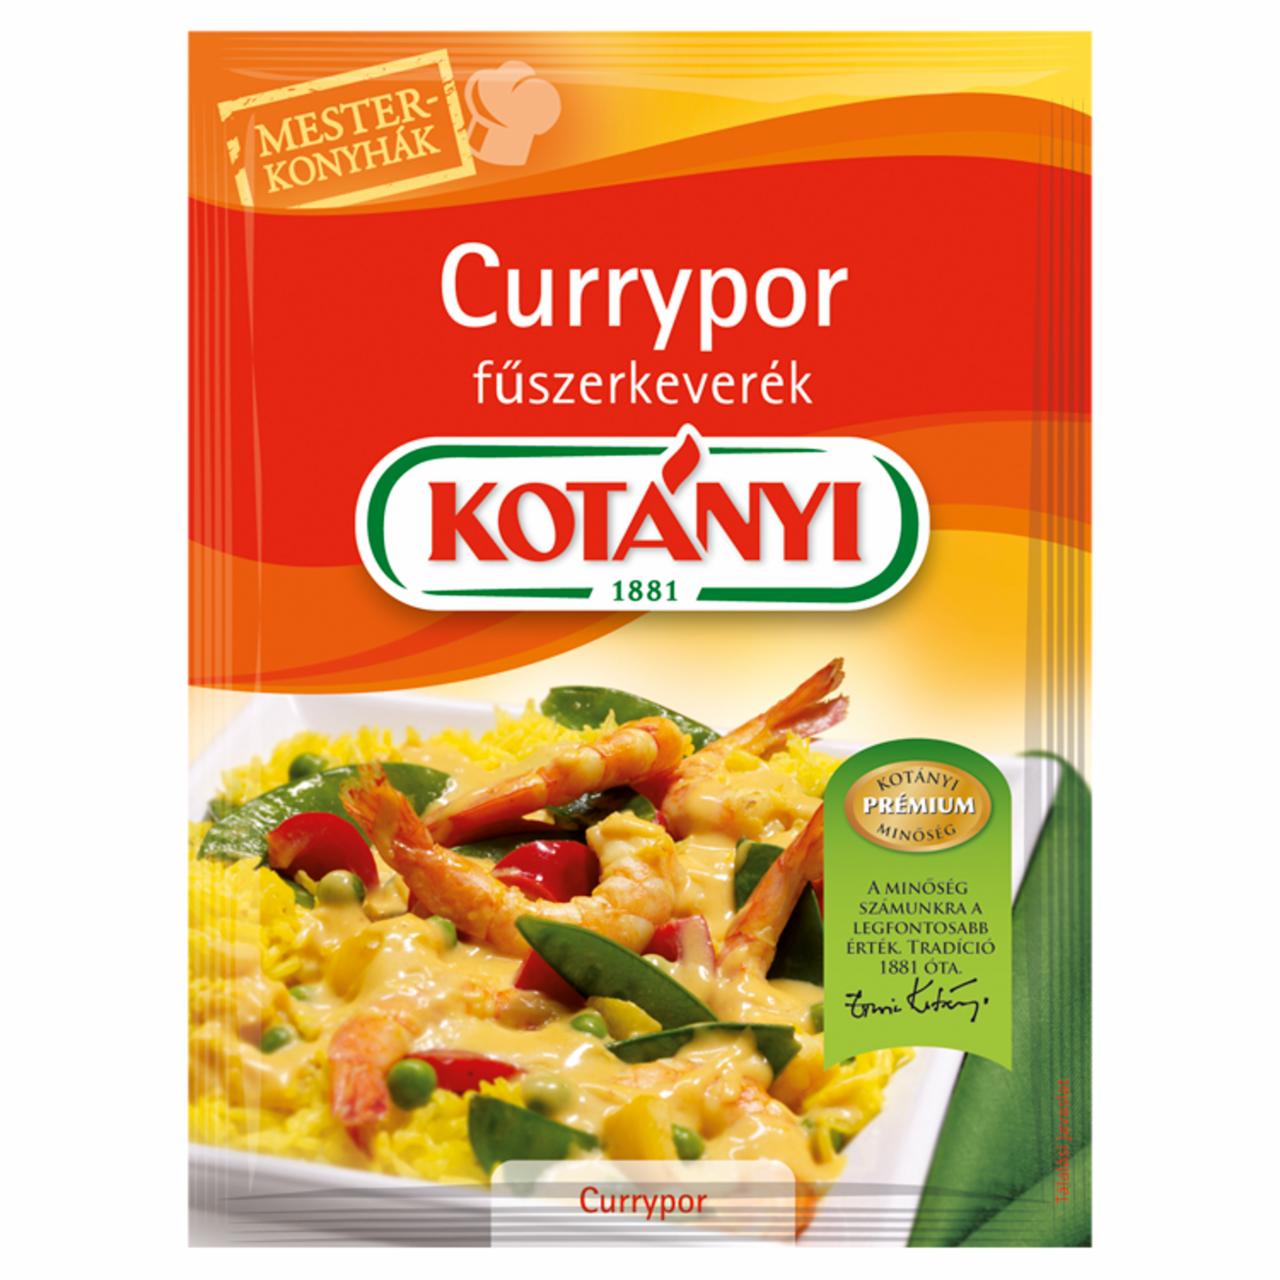 Képek - Kotányi Mesterkonyhák currypor fűszerkeverék 27 g